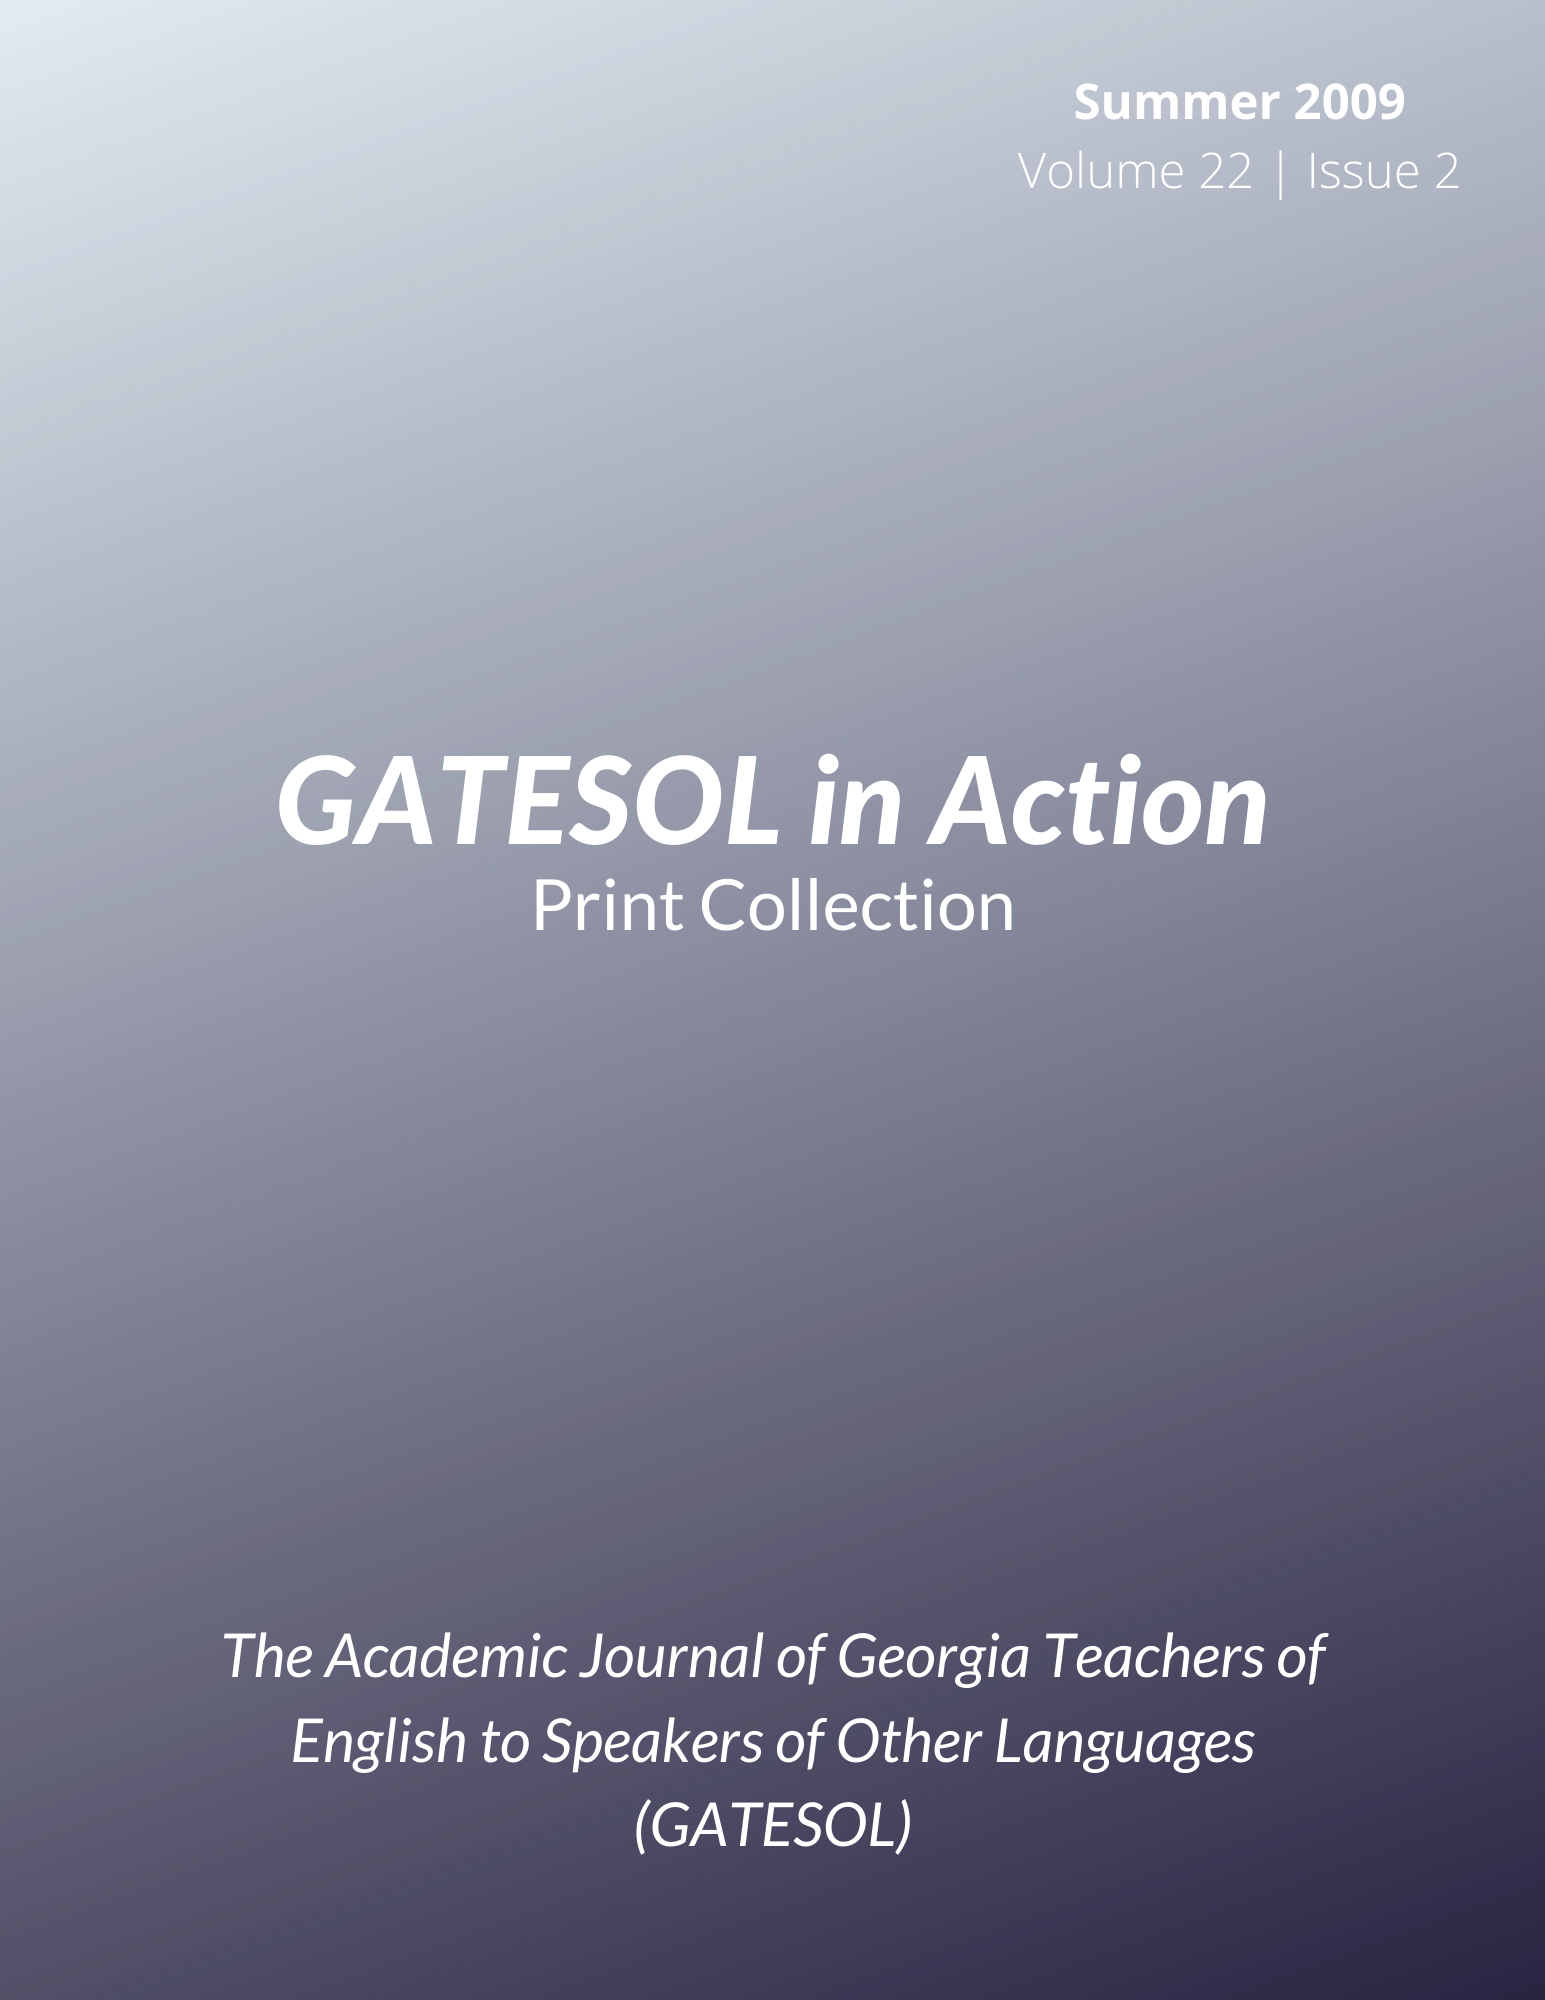 GATESOL in Action (Summer 2009, Volume 22, Issue 2)